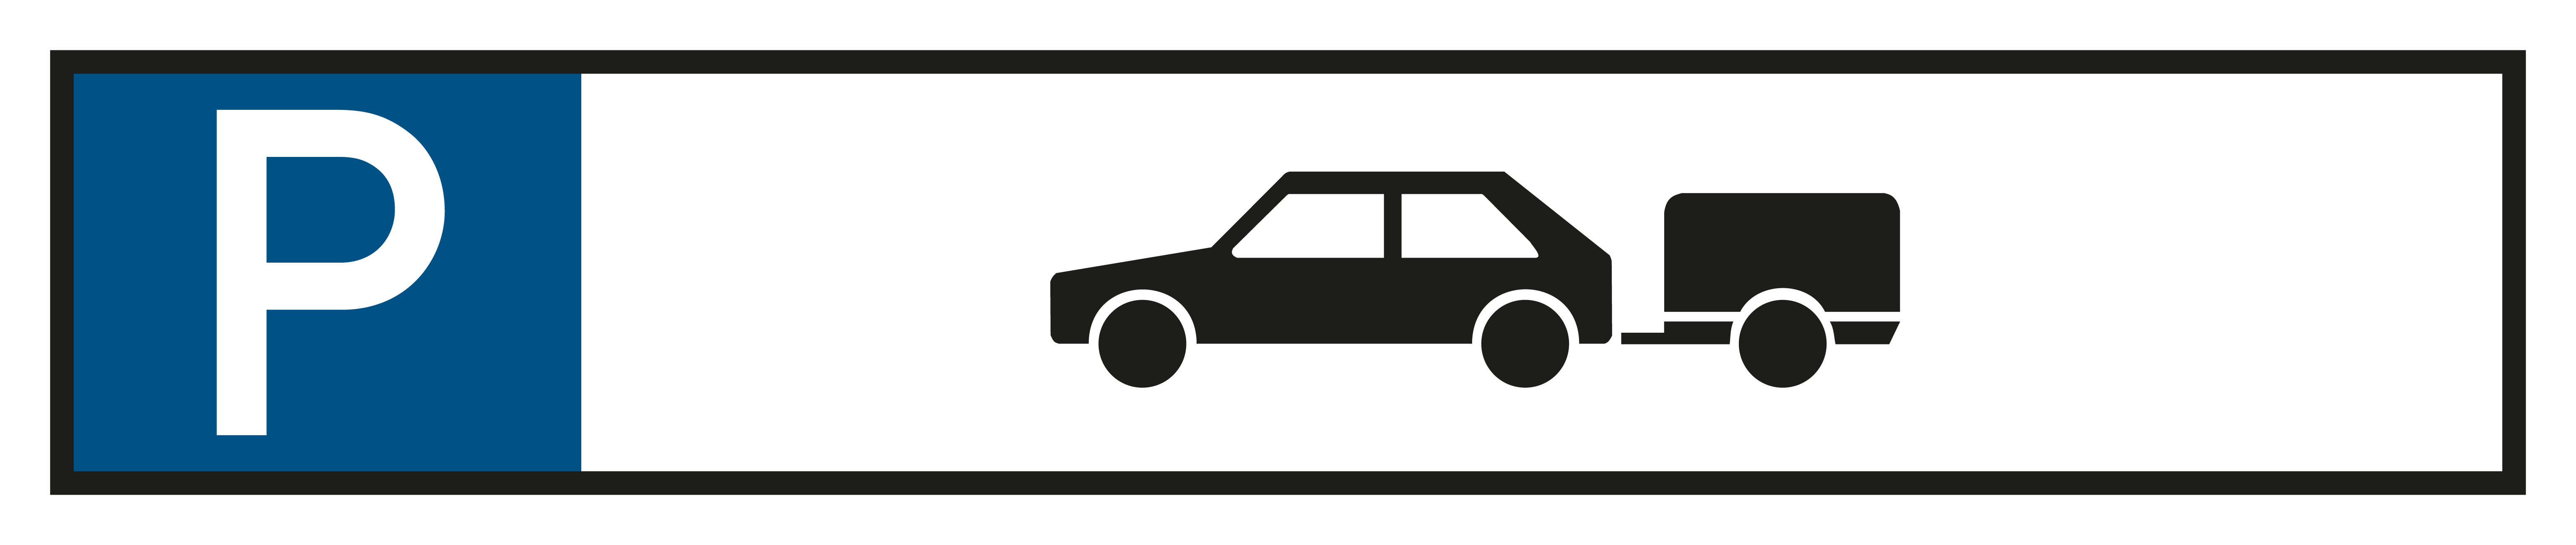 Parkplatzschild - Nur für PKW mit Anhänger  - Folie Selbstklebend  - 11 x 52 cm